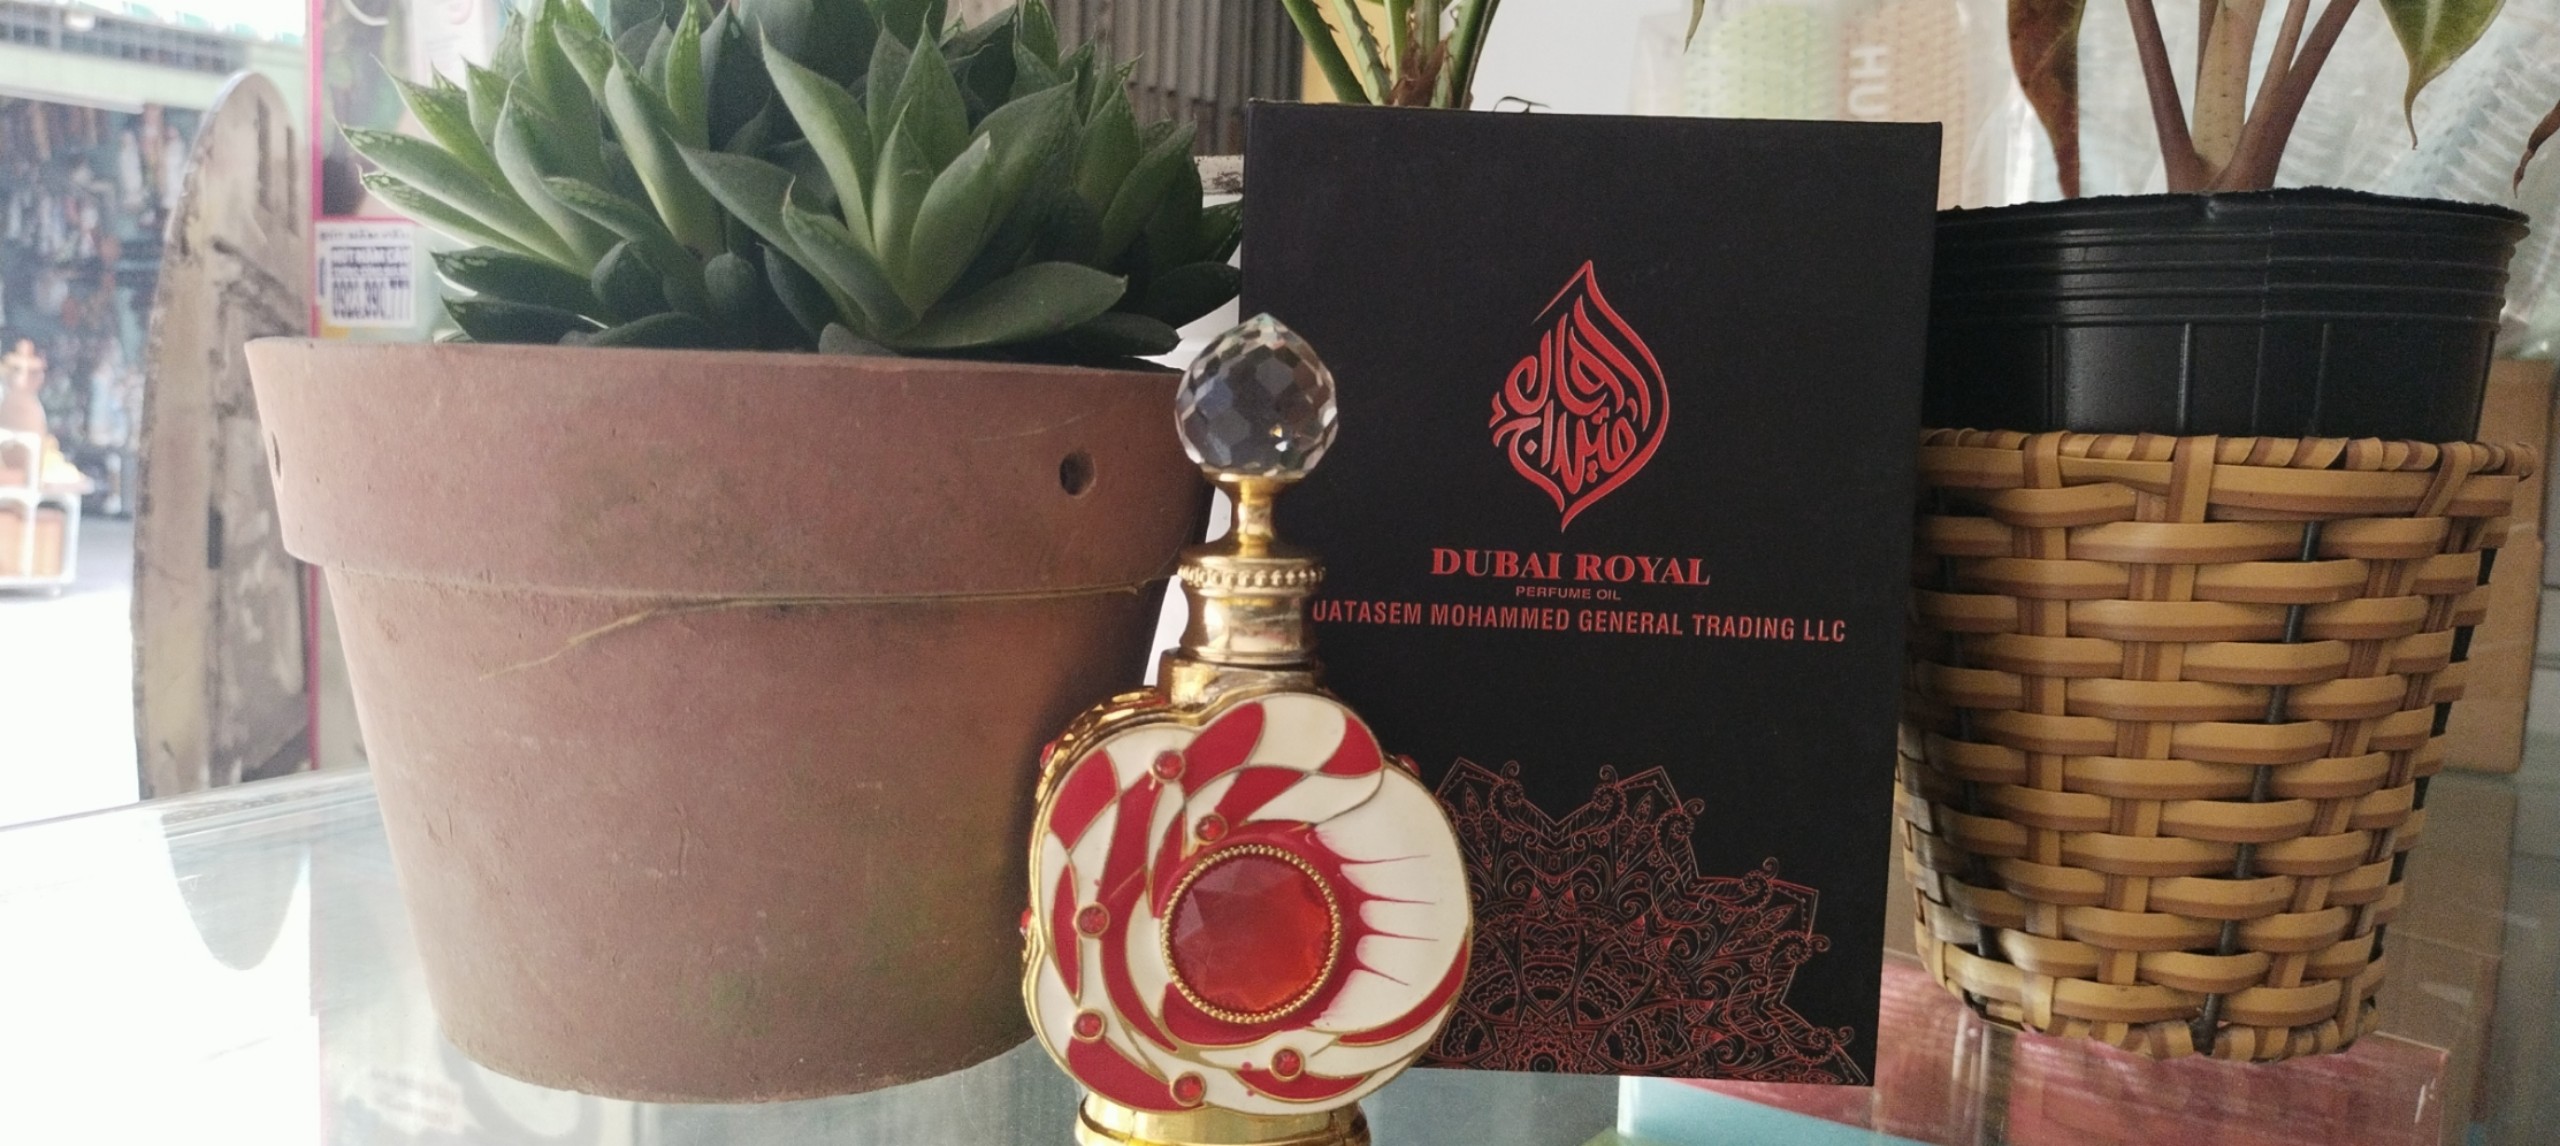 chai tinh dầu Dubai Lucky Red( không có tem phụ- không xuất hóa đơn )